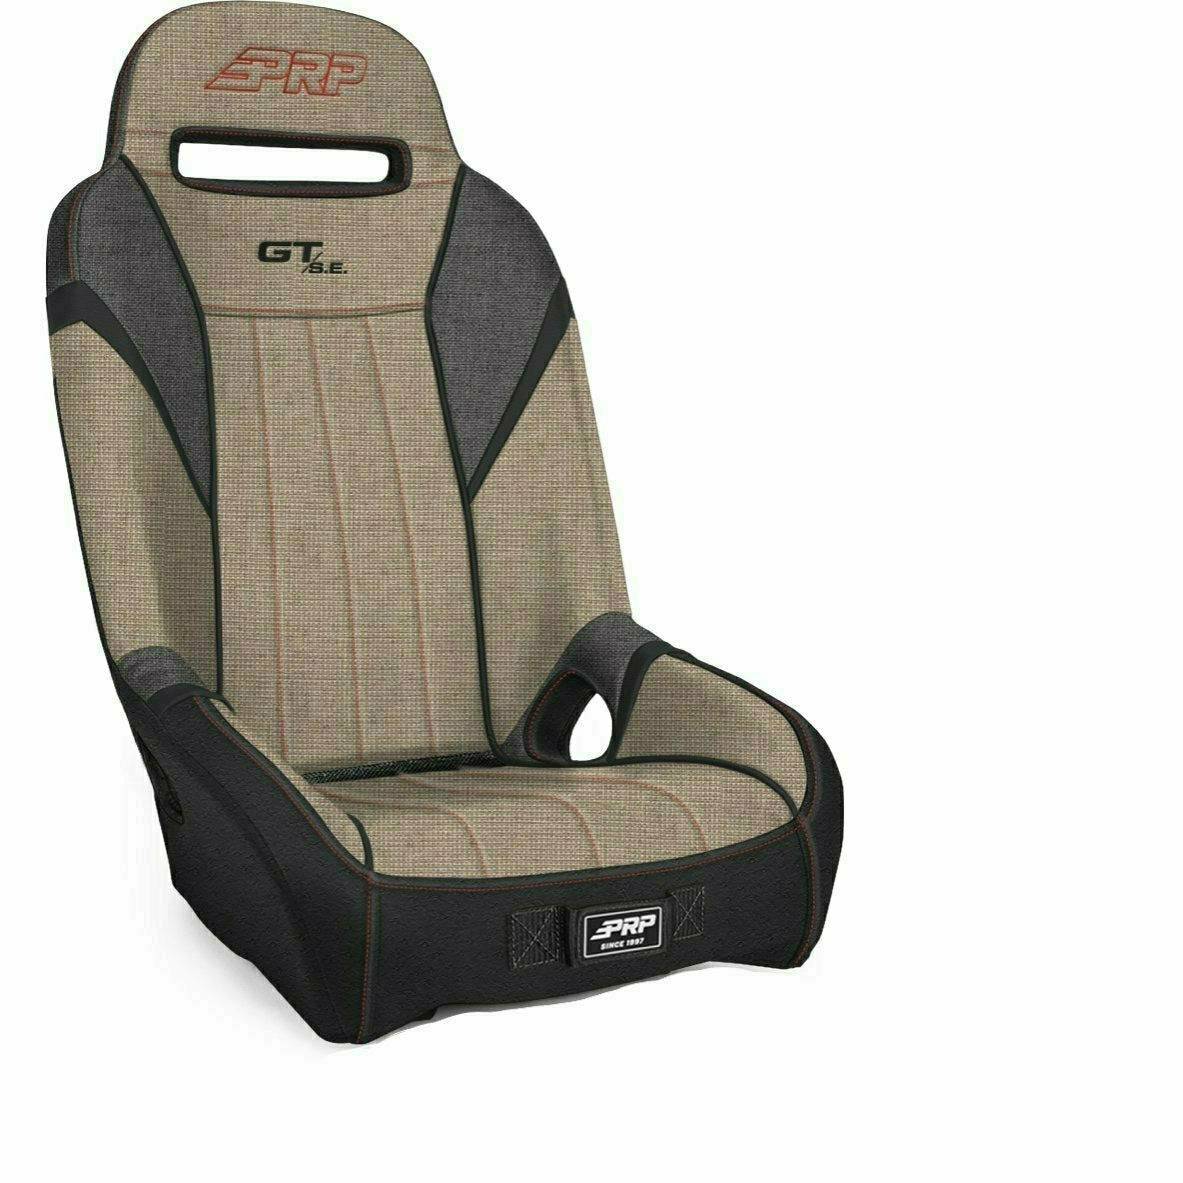 PRP Can Am GT/S.E. Suspension Seats (Pair)